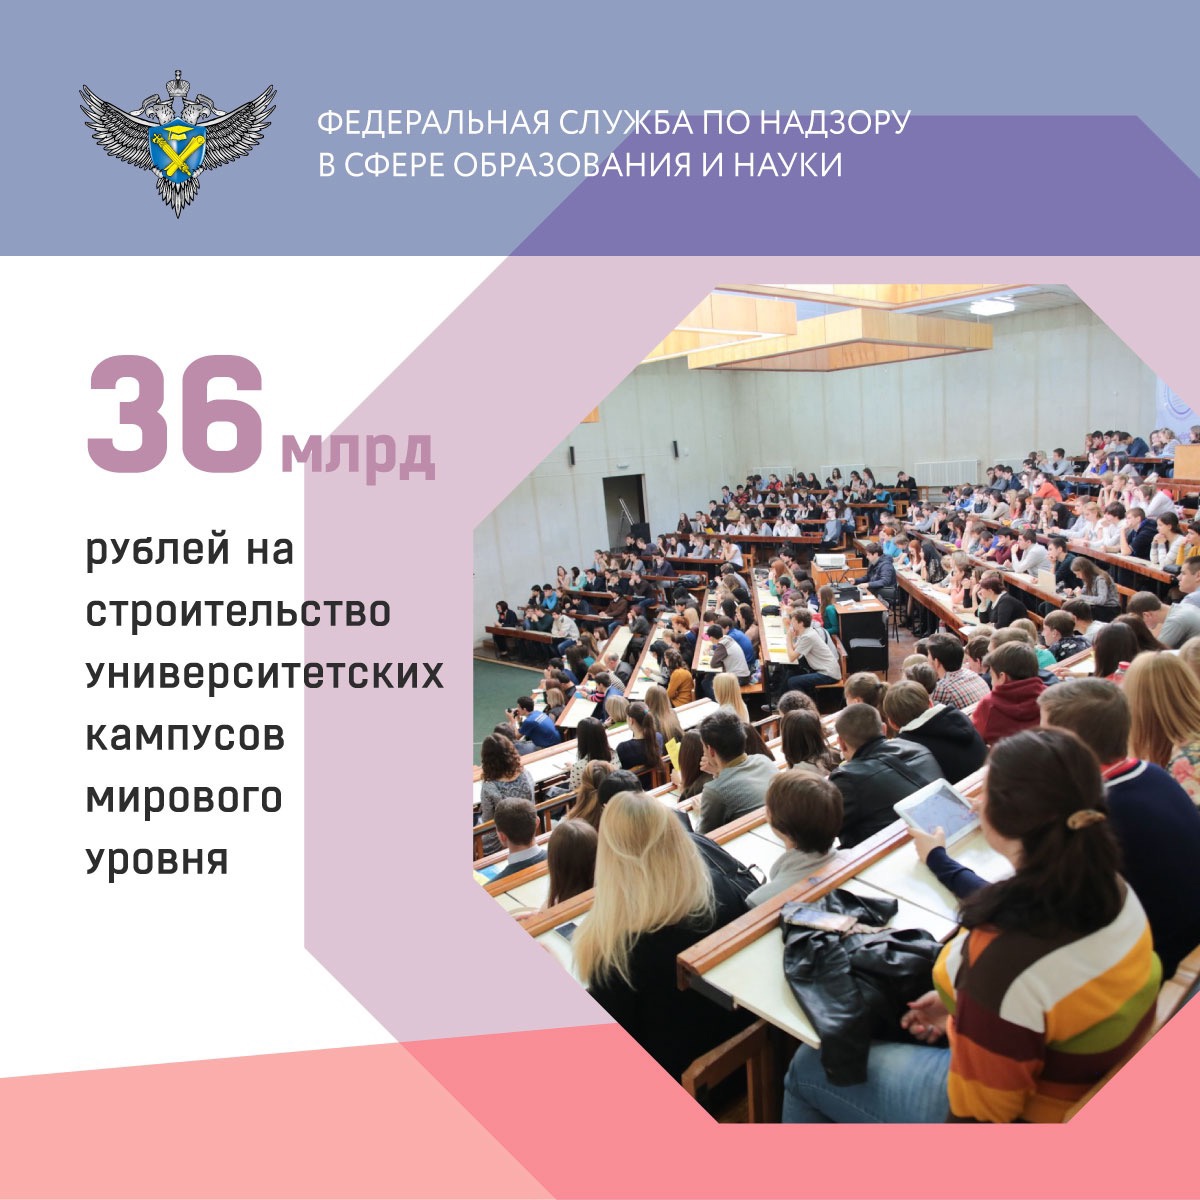 36 млрд рублей будет потрачено на строительство университетских кампусов мирового уровня.